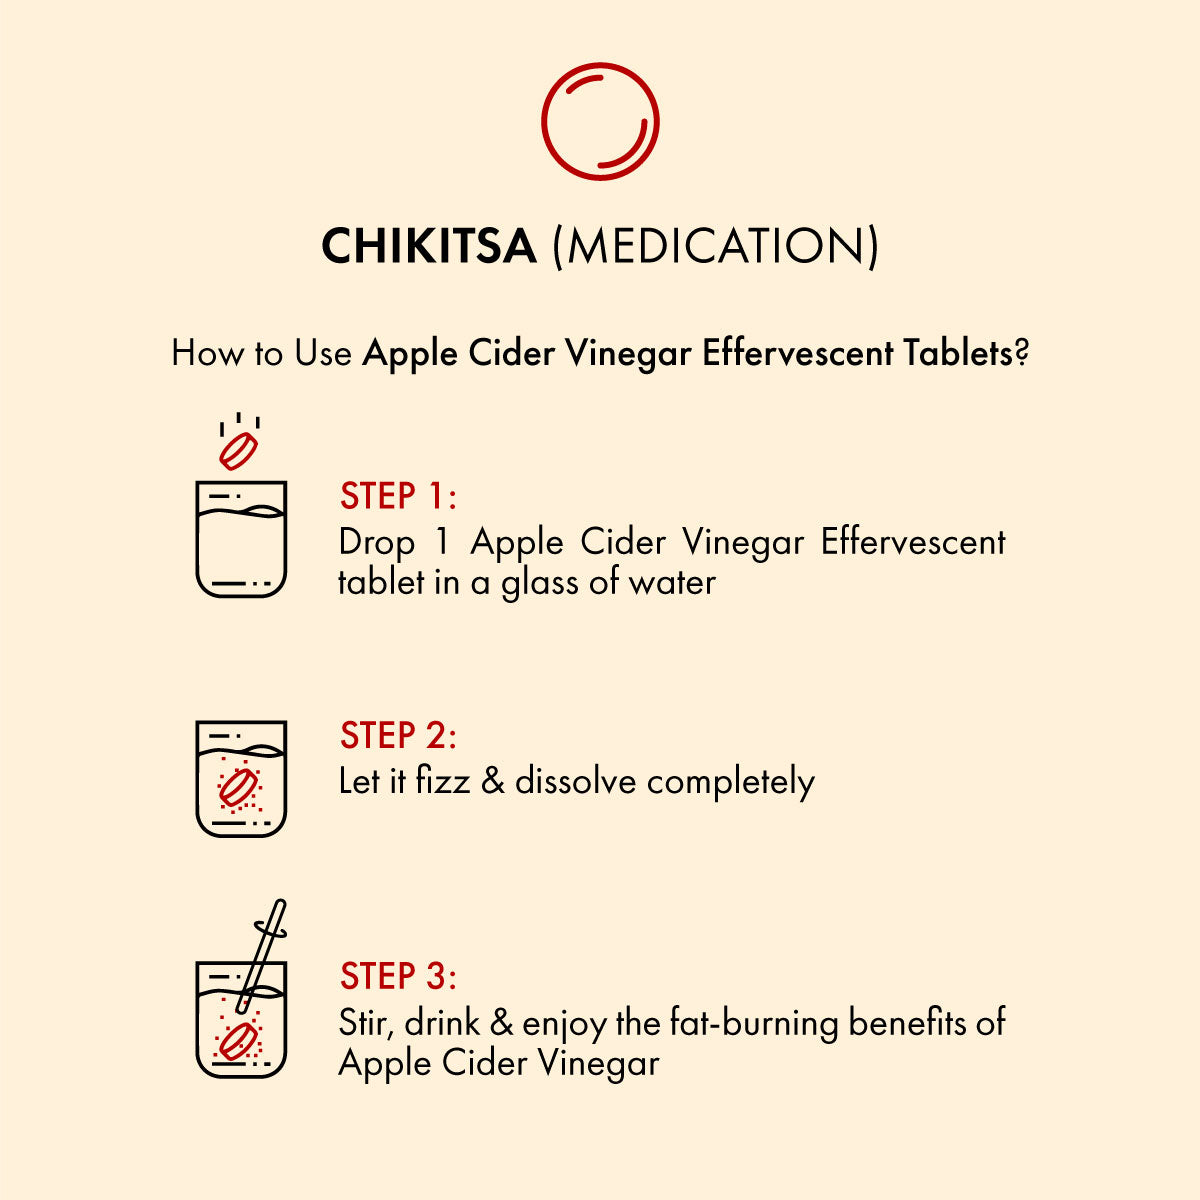 Dr. Vaidya's Apple Cider Vinegar Effervescent Tablets